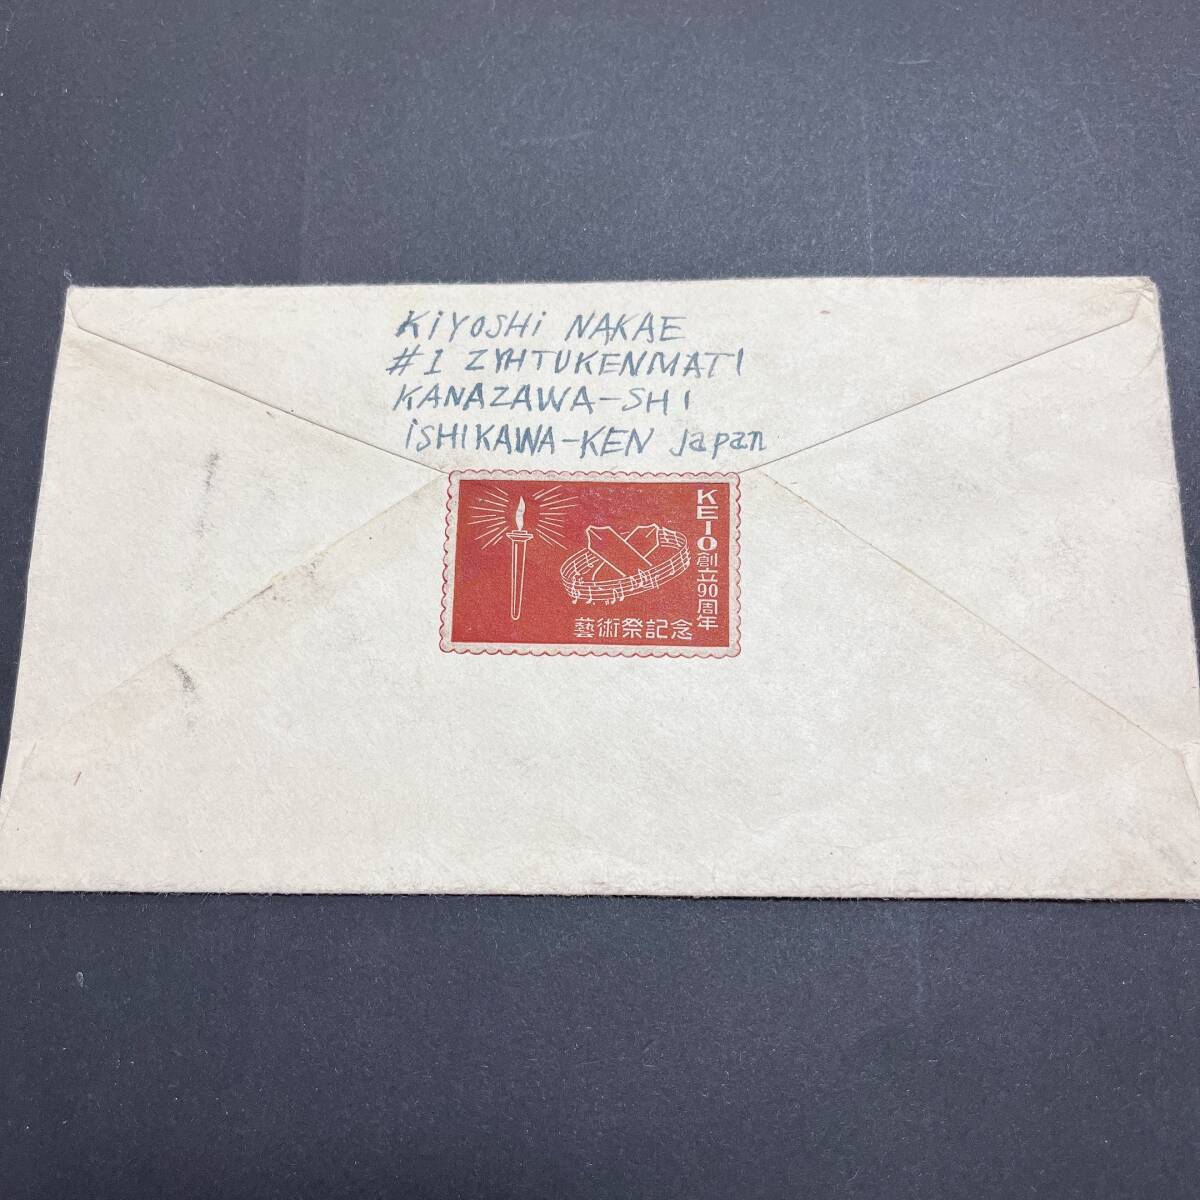 1948年 郵便創始75年記念 50銭x2、1円ほか貼 米宛航空書状使用例 櫛型 金沢 エンタイア_画像5